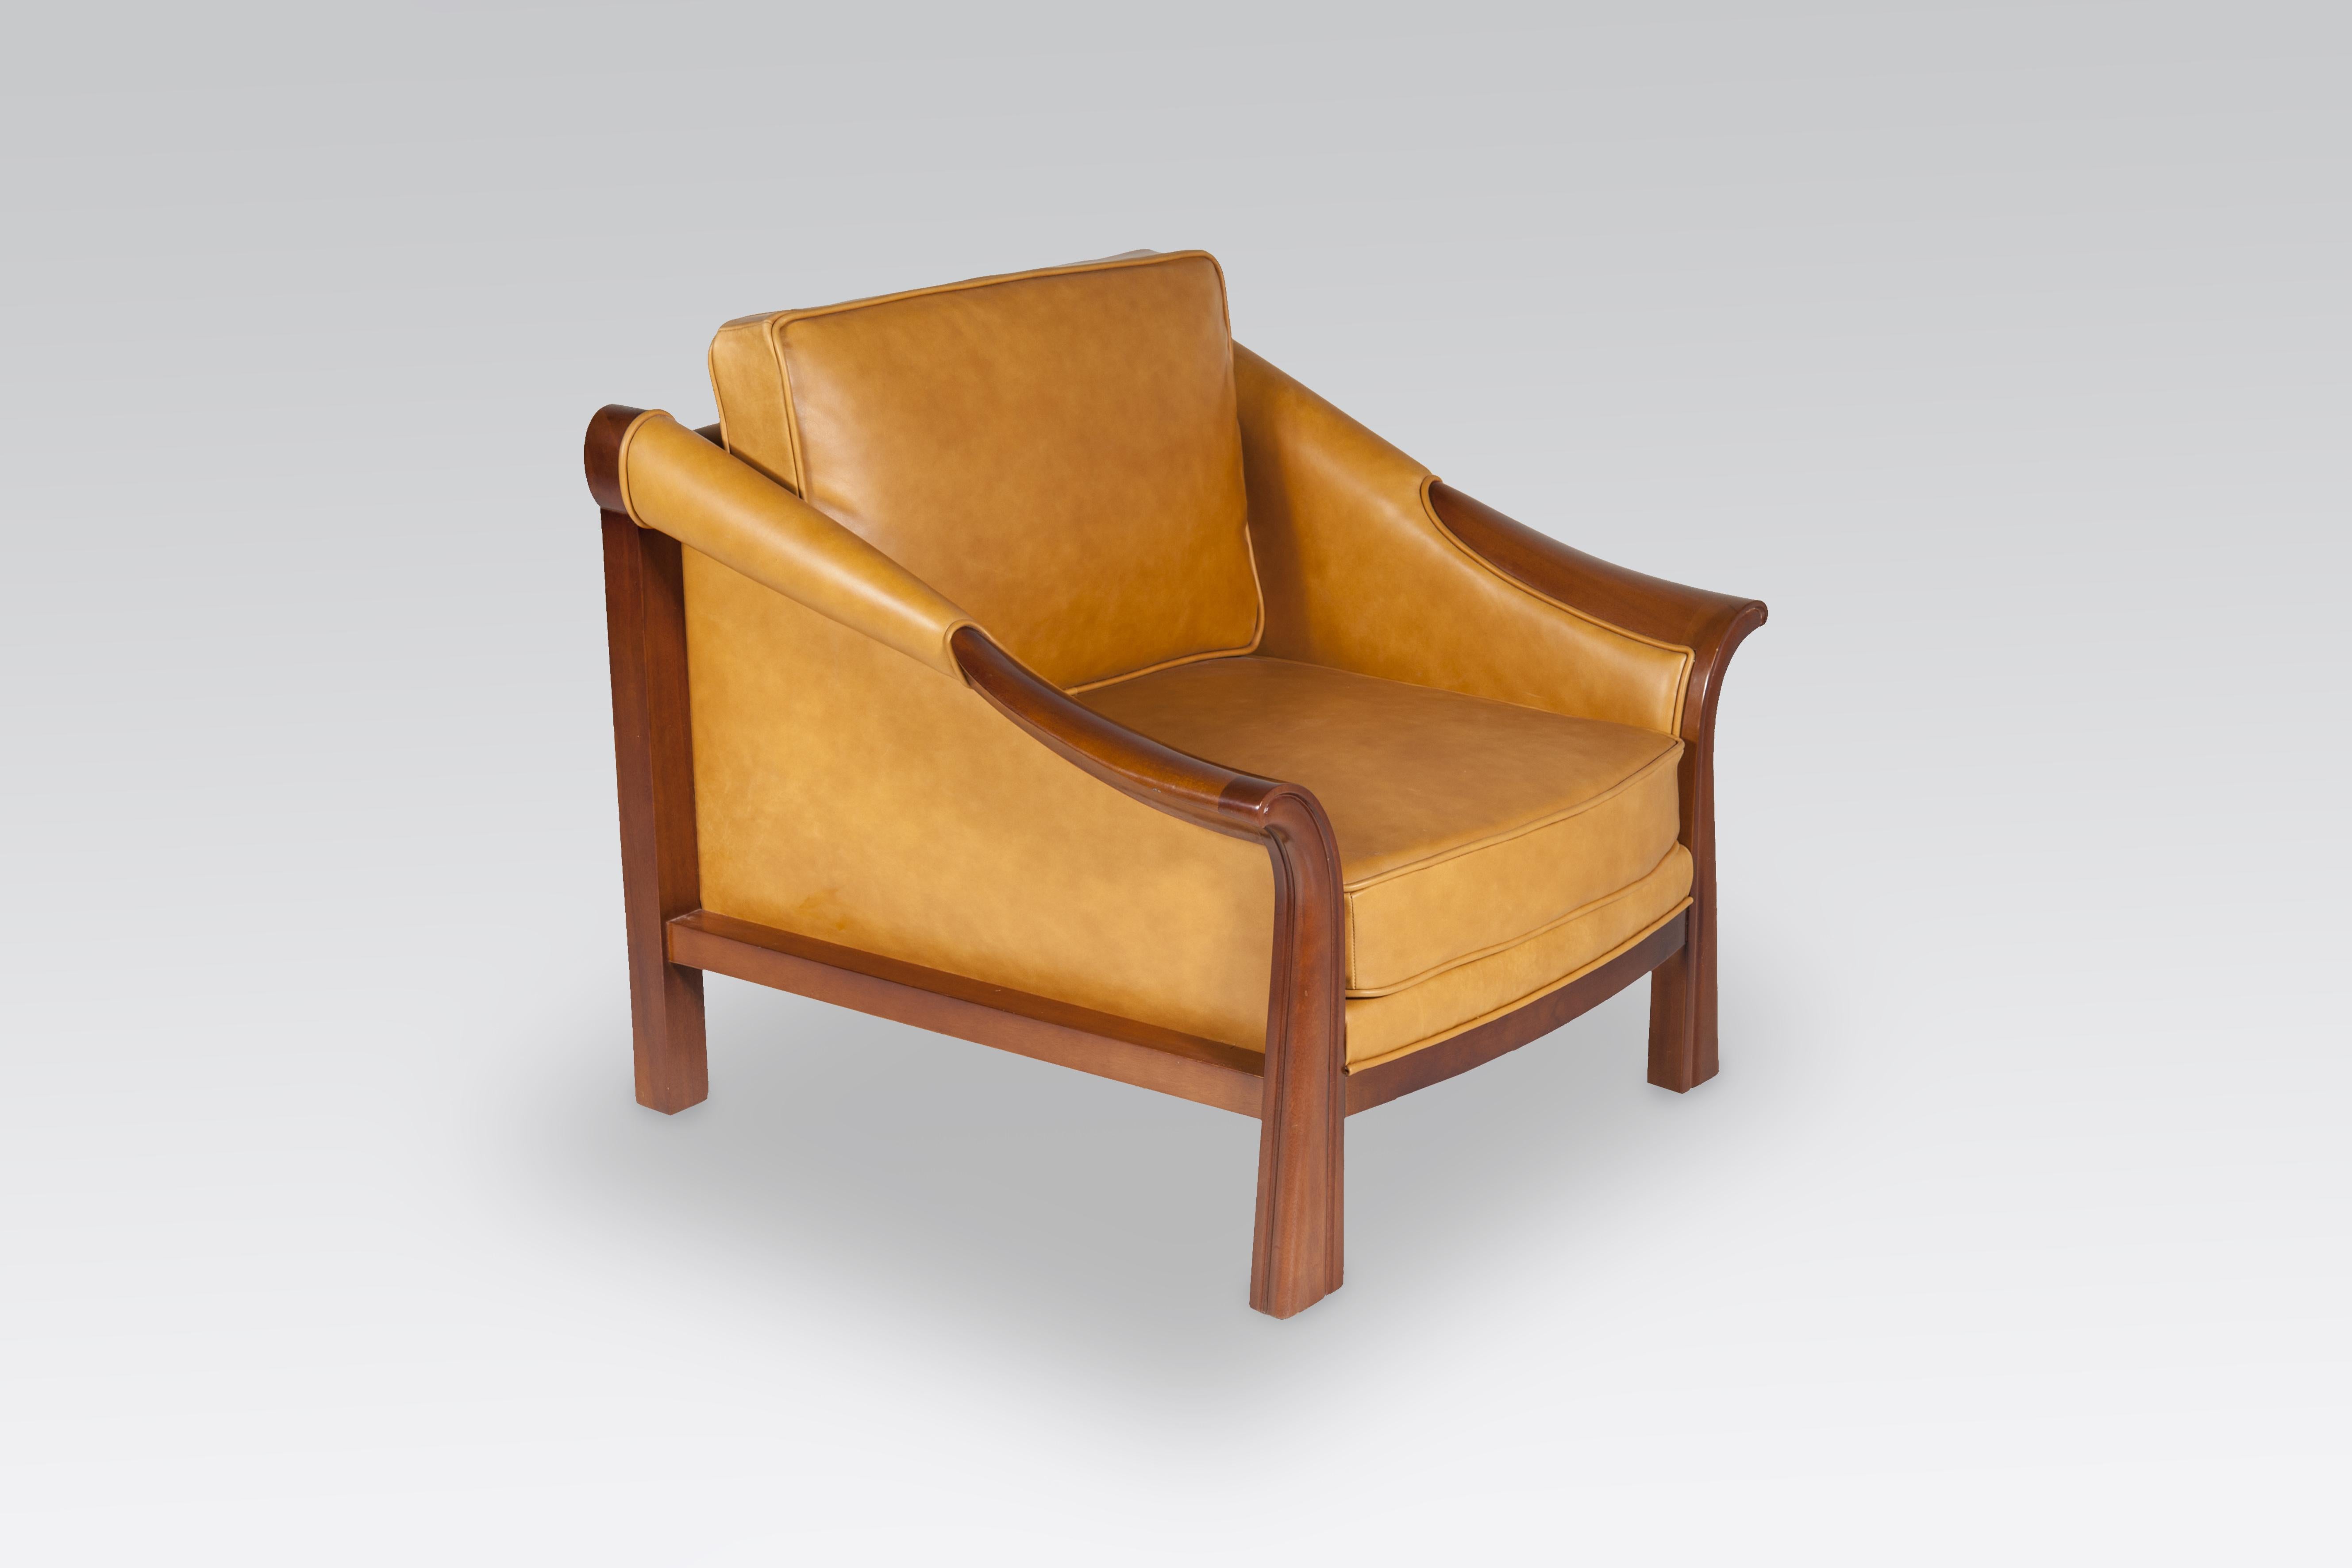 Paire de fauteuils par Pierre Chareau modèle SN 37, circa 1970.
Avec un nouveau tissu en cuir cognac.

Dimension : 80 x 77 x 76 H.
 